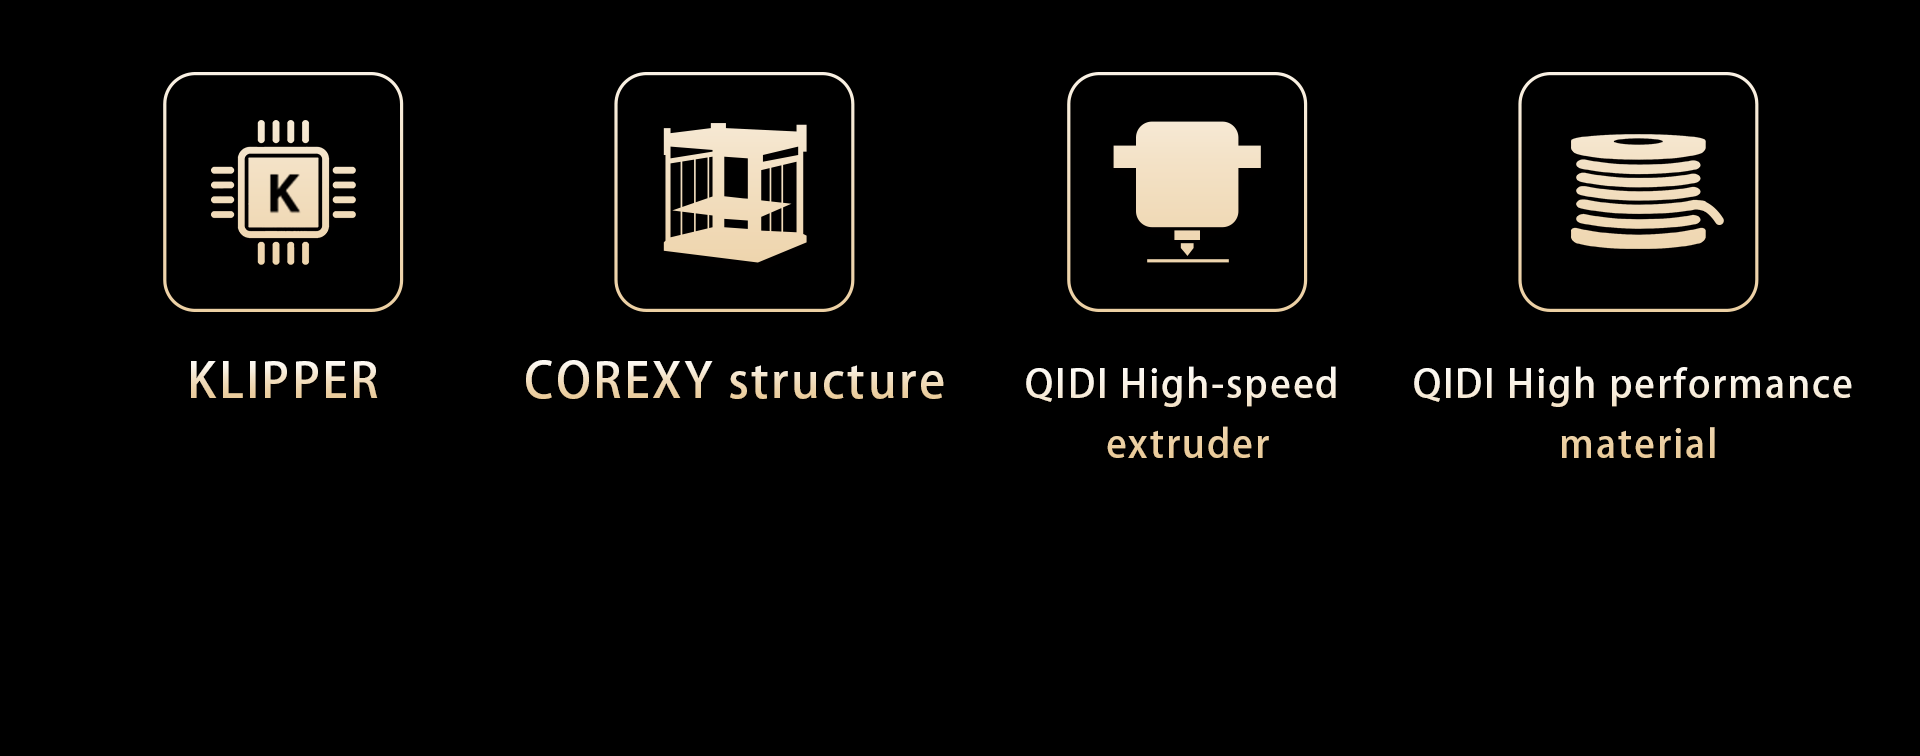 QIDI TECH X-Max 3 3D tlačiareň, automatické vyrovnávanie, rýchlosť tlače 600 mm/s, flexibilná HF doska, ventilátor s cirkuláciou v komore, detekcia filamentu, sušiaci box, 325*325*315 mm